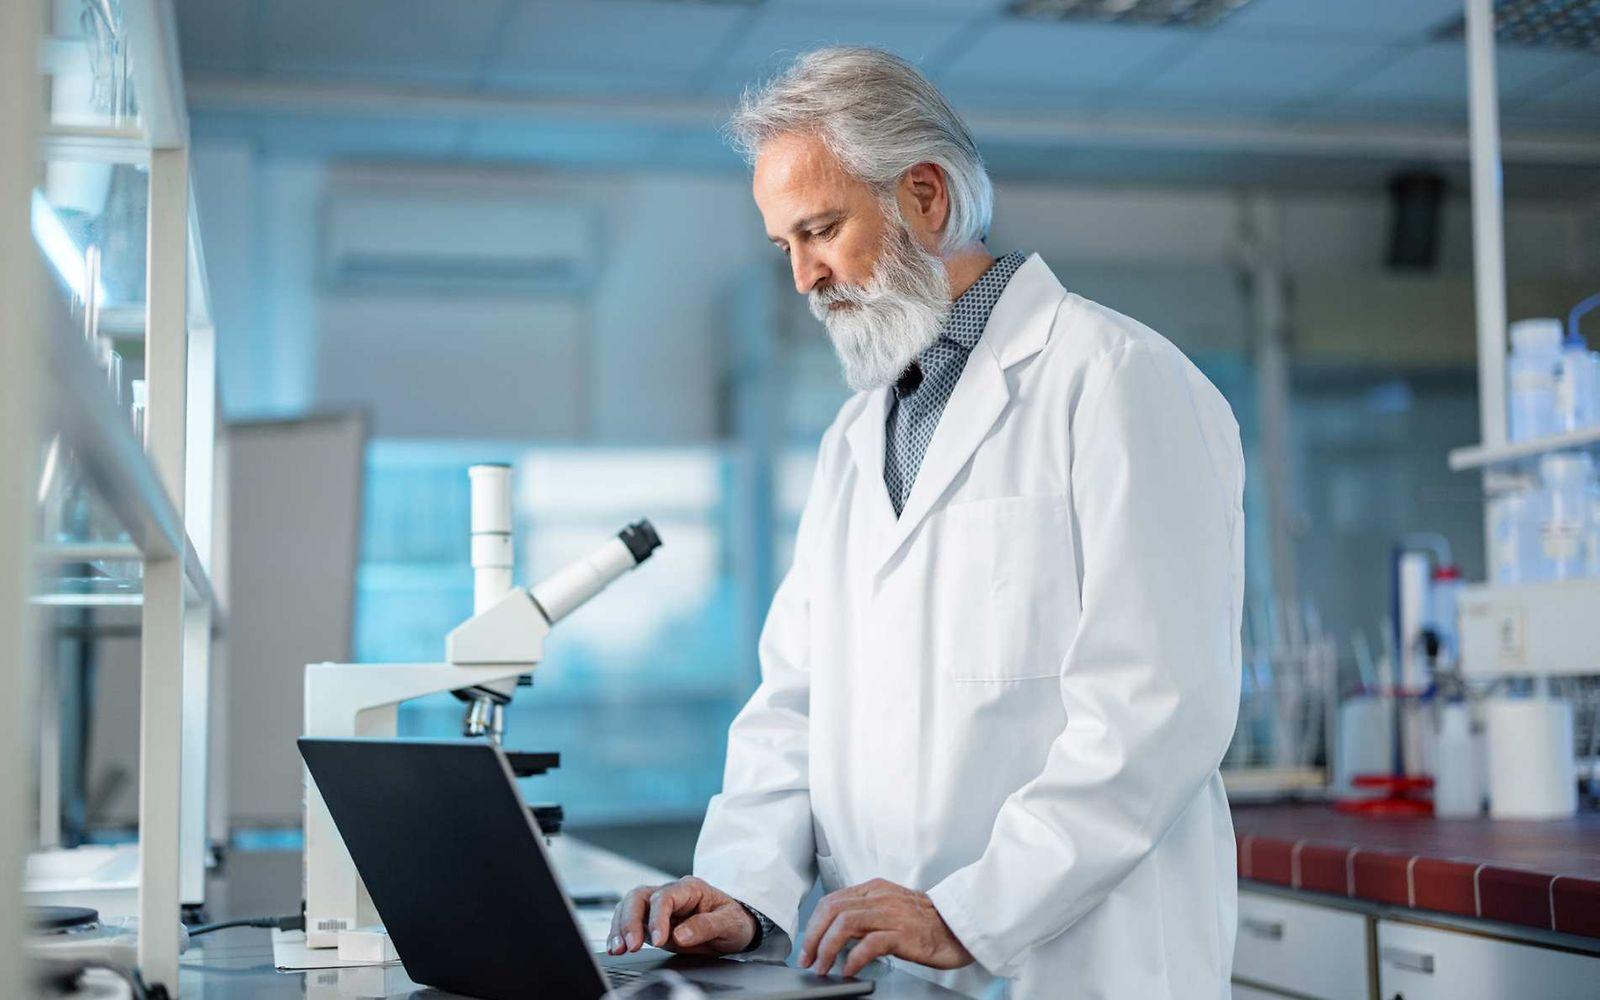 Bild: Chemiker steht im Labor und schaut etwas im Laptop nach.